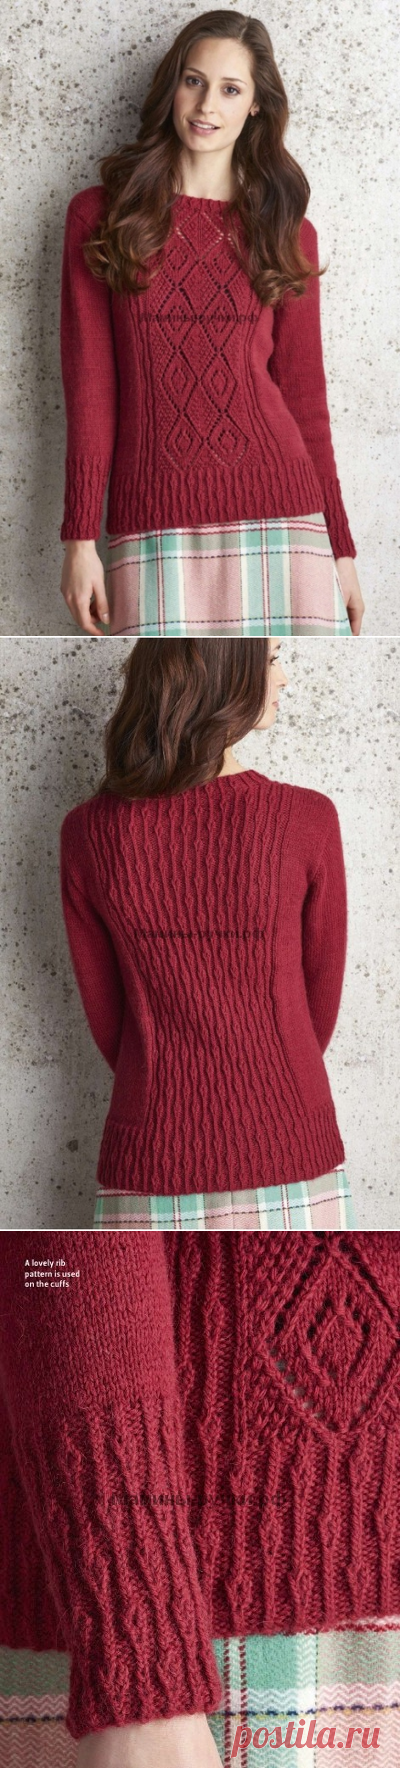 Вязаный спицами пуловер Charlecote от Аманды Джонс.